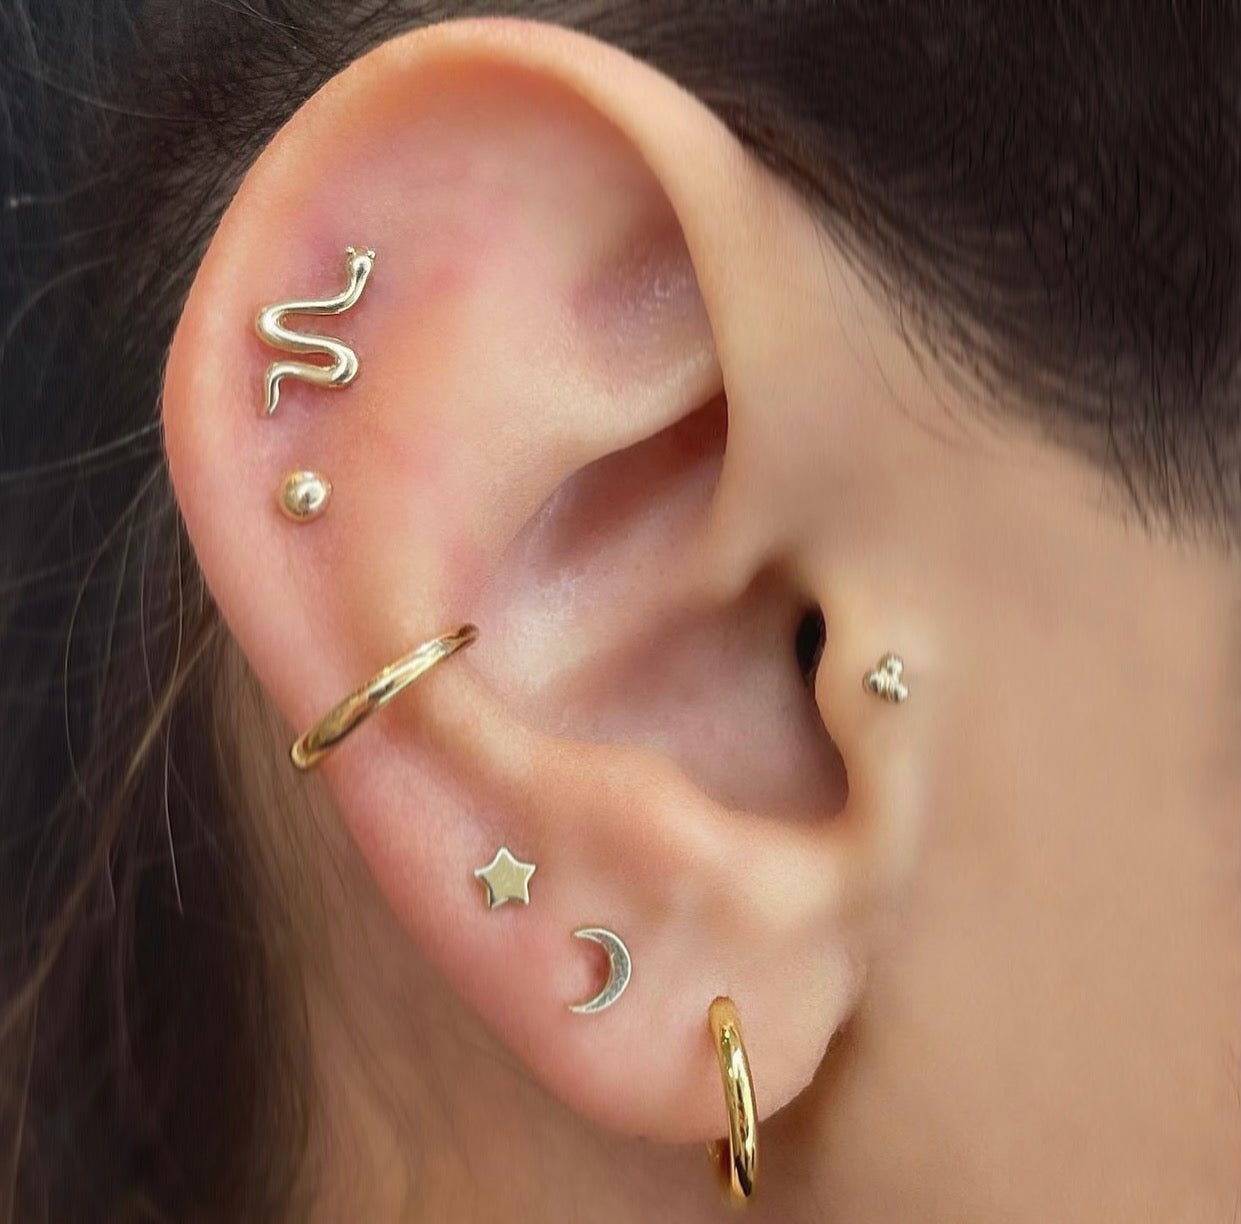 14k Moon Single Earring - Lulu Ave Body Jewelery